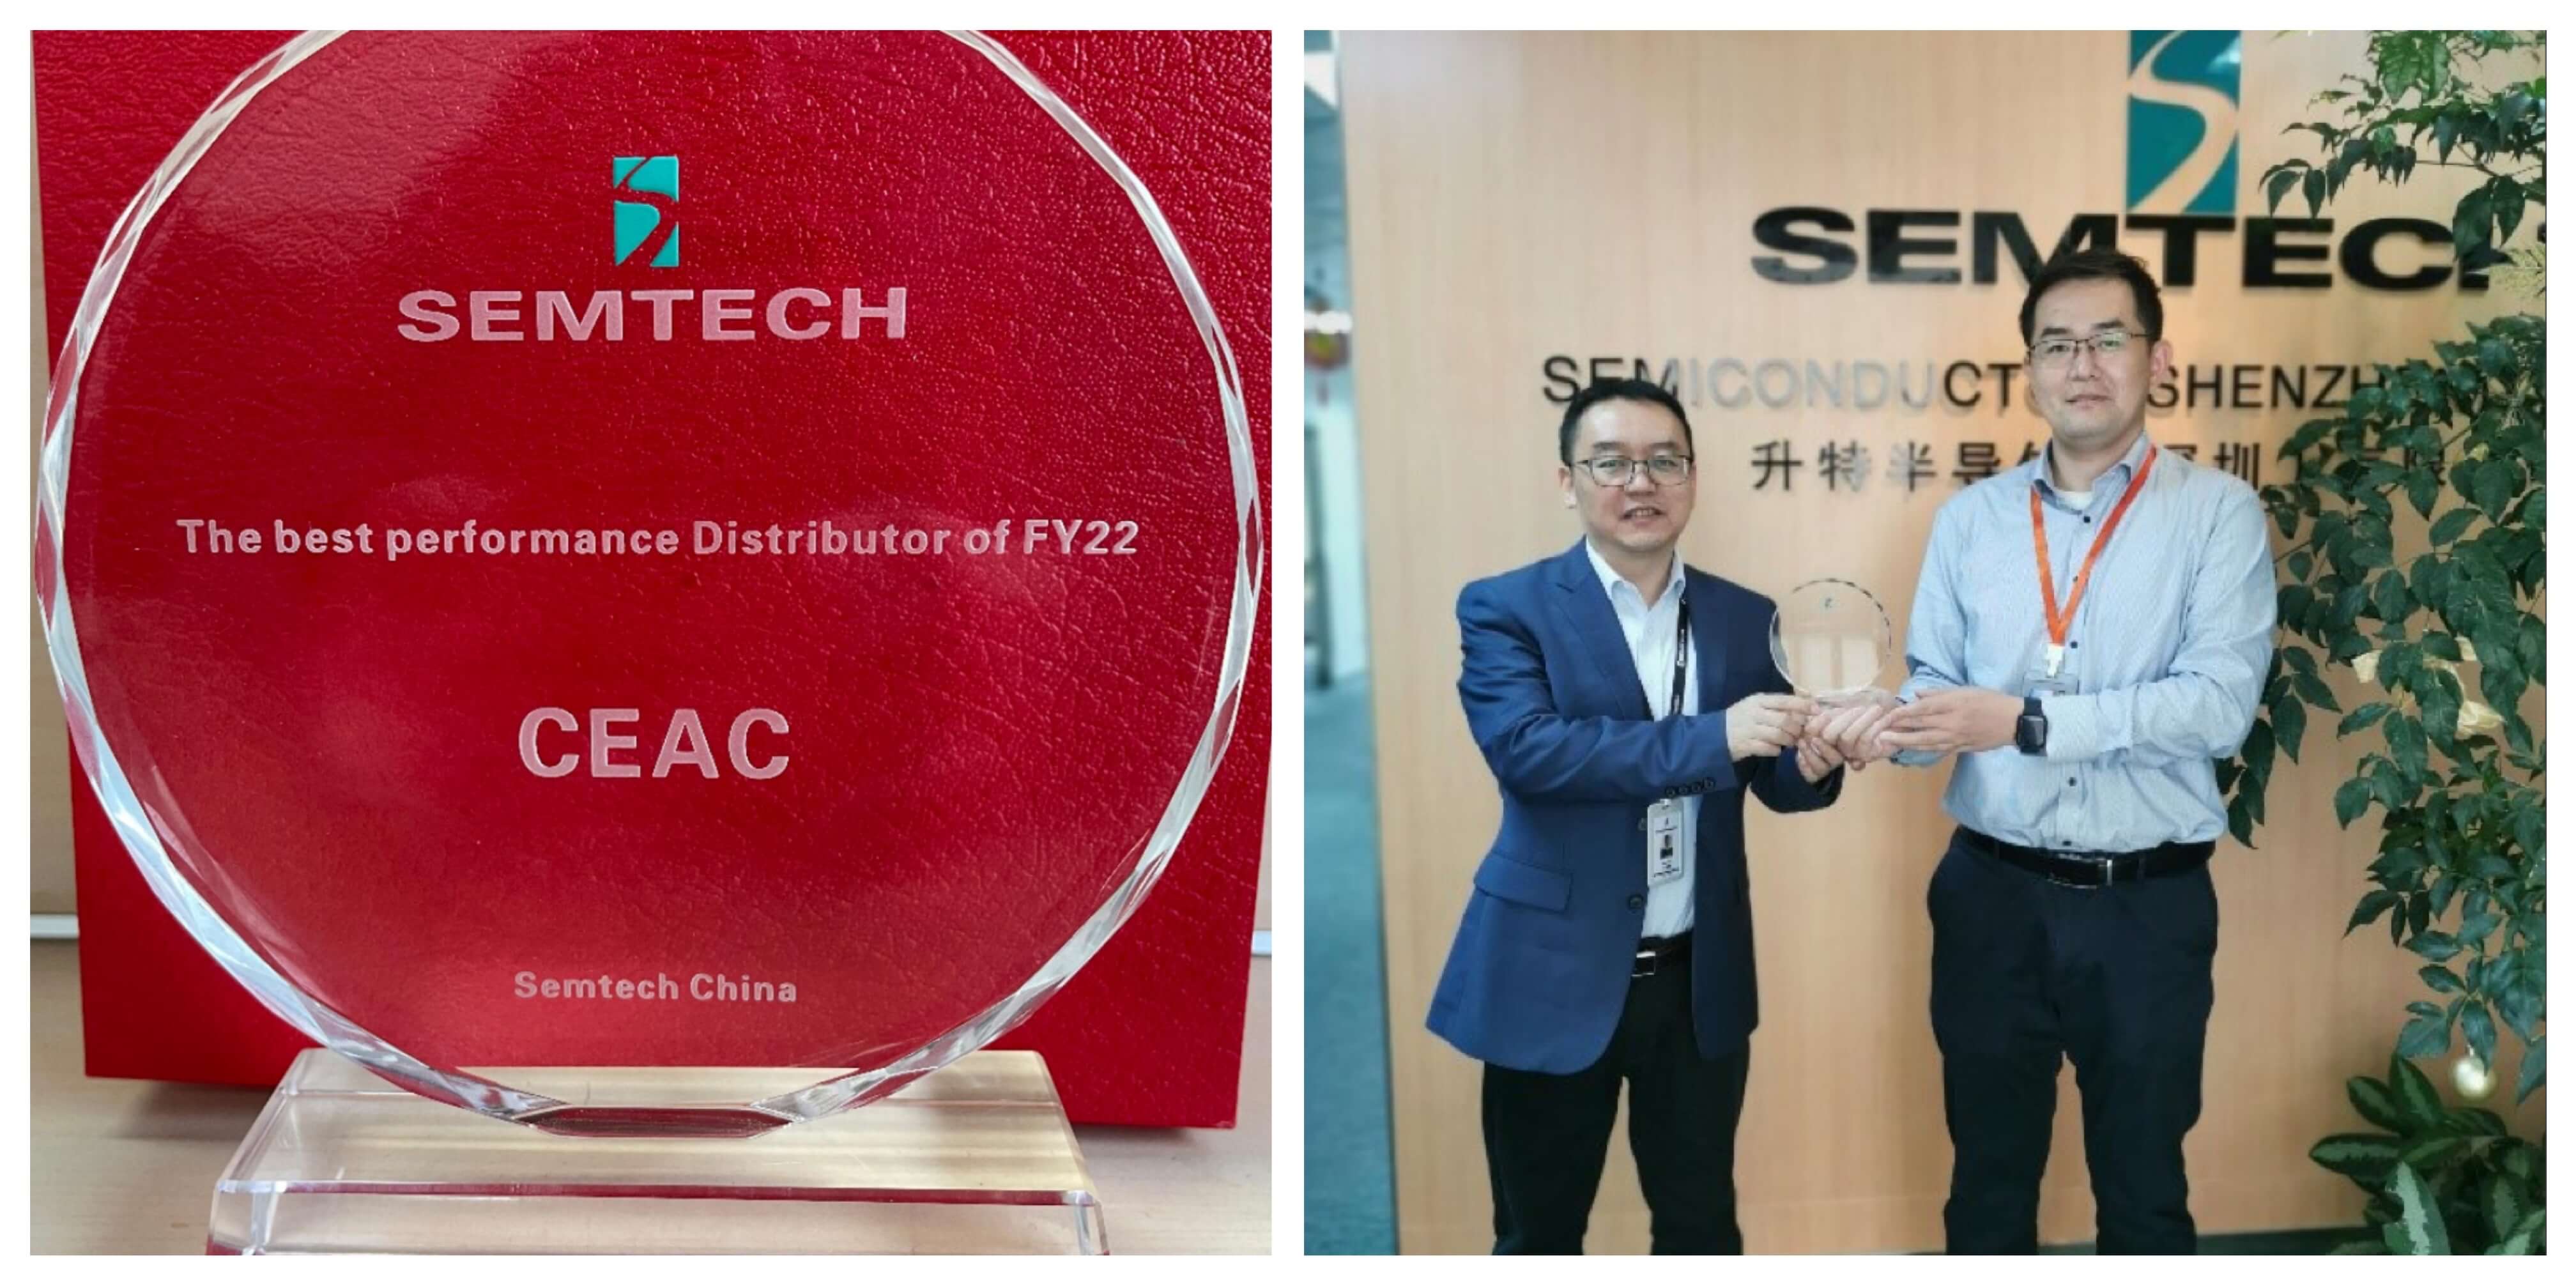 喜讯 | 中电港荣获2021年度 Semtech 最佳分销商奖